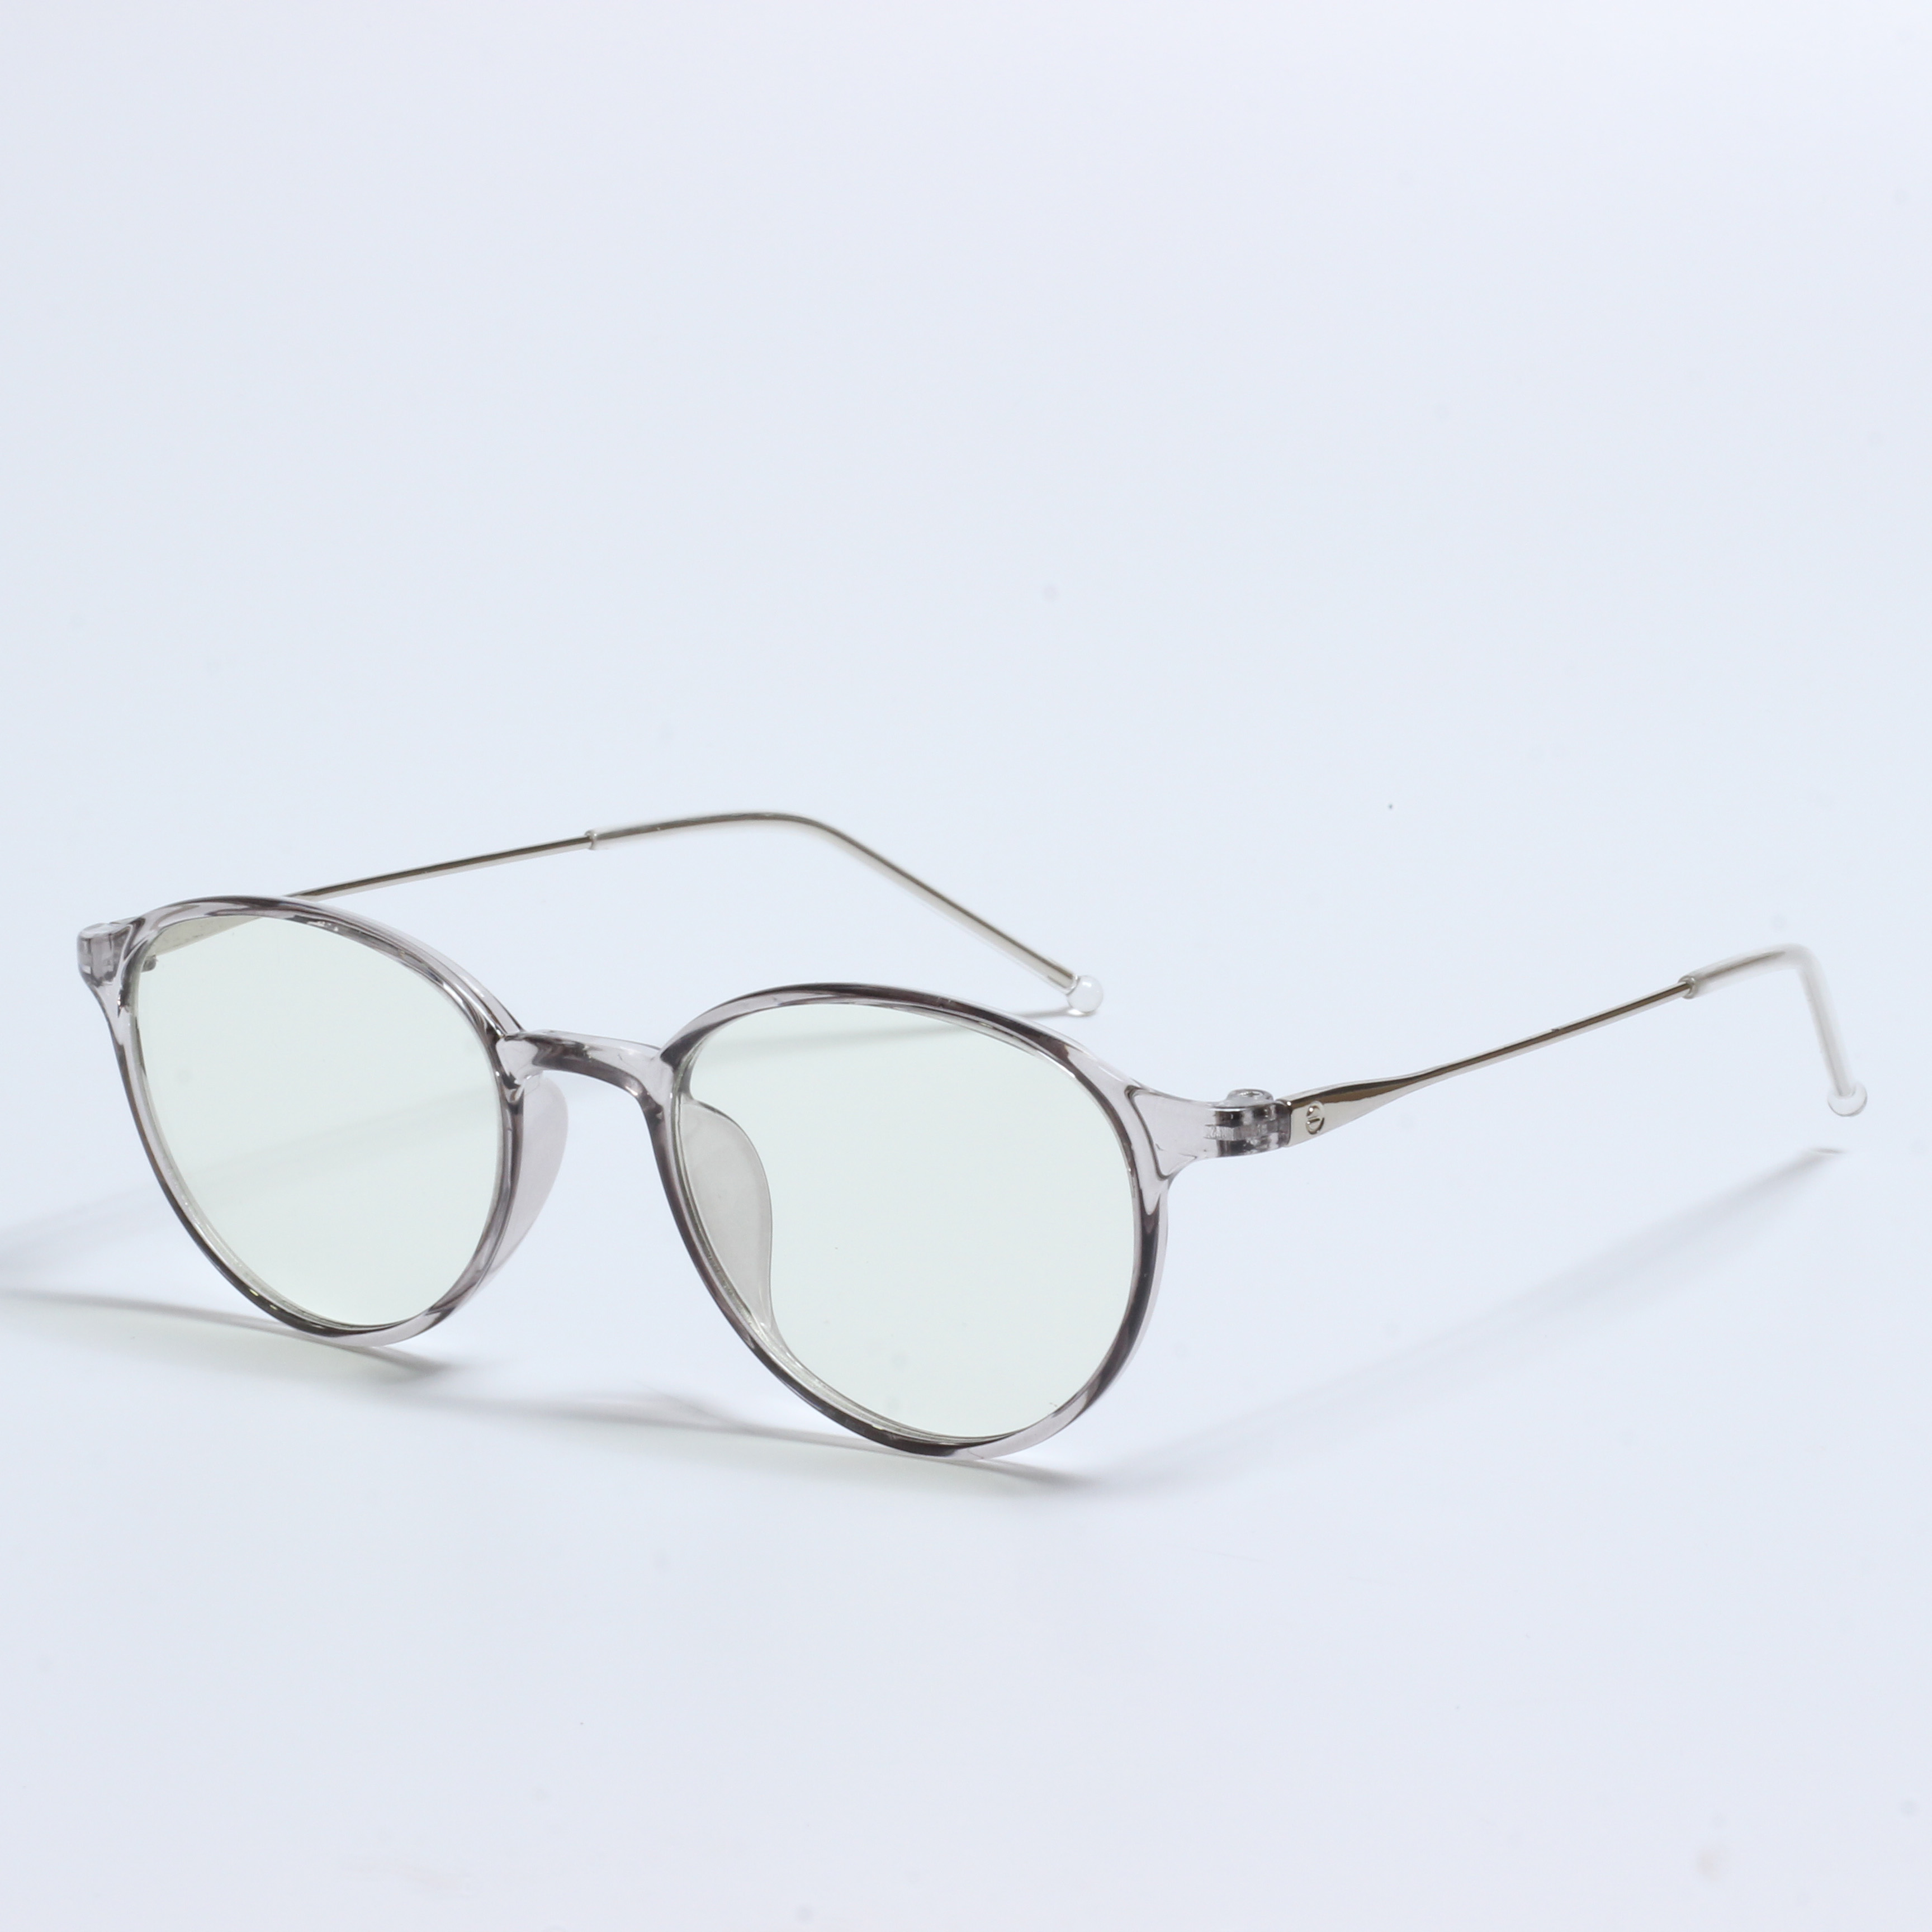 Stock clearance TR Uban sa metal optical glasses frame (6)